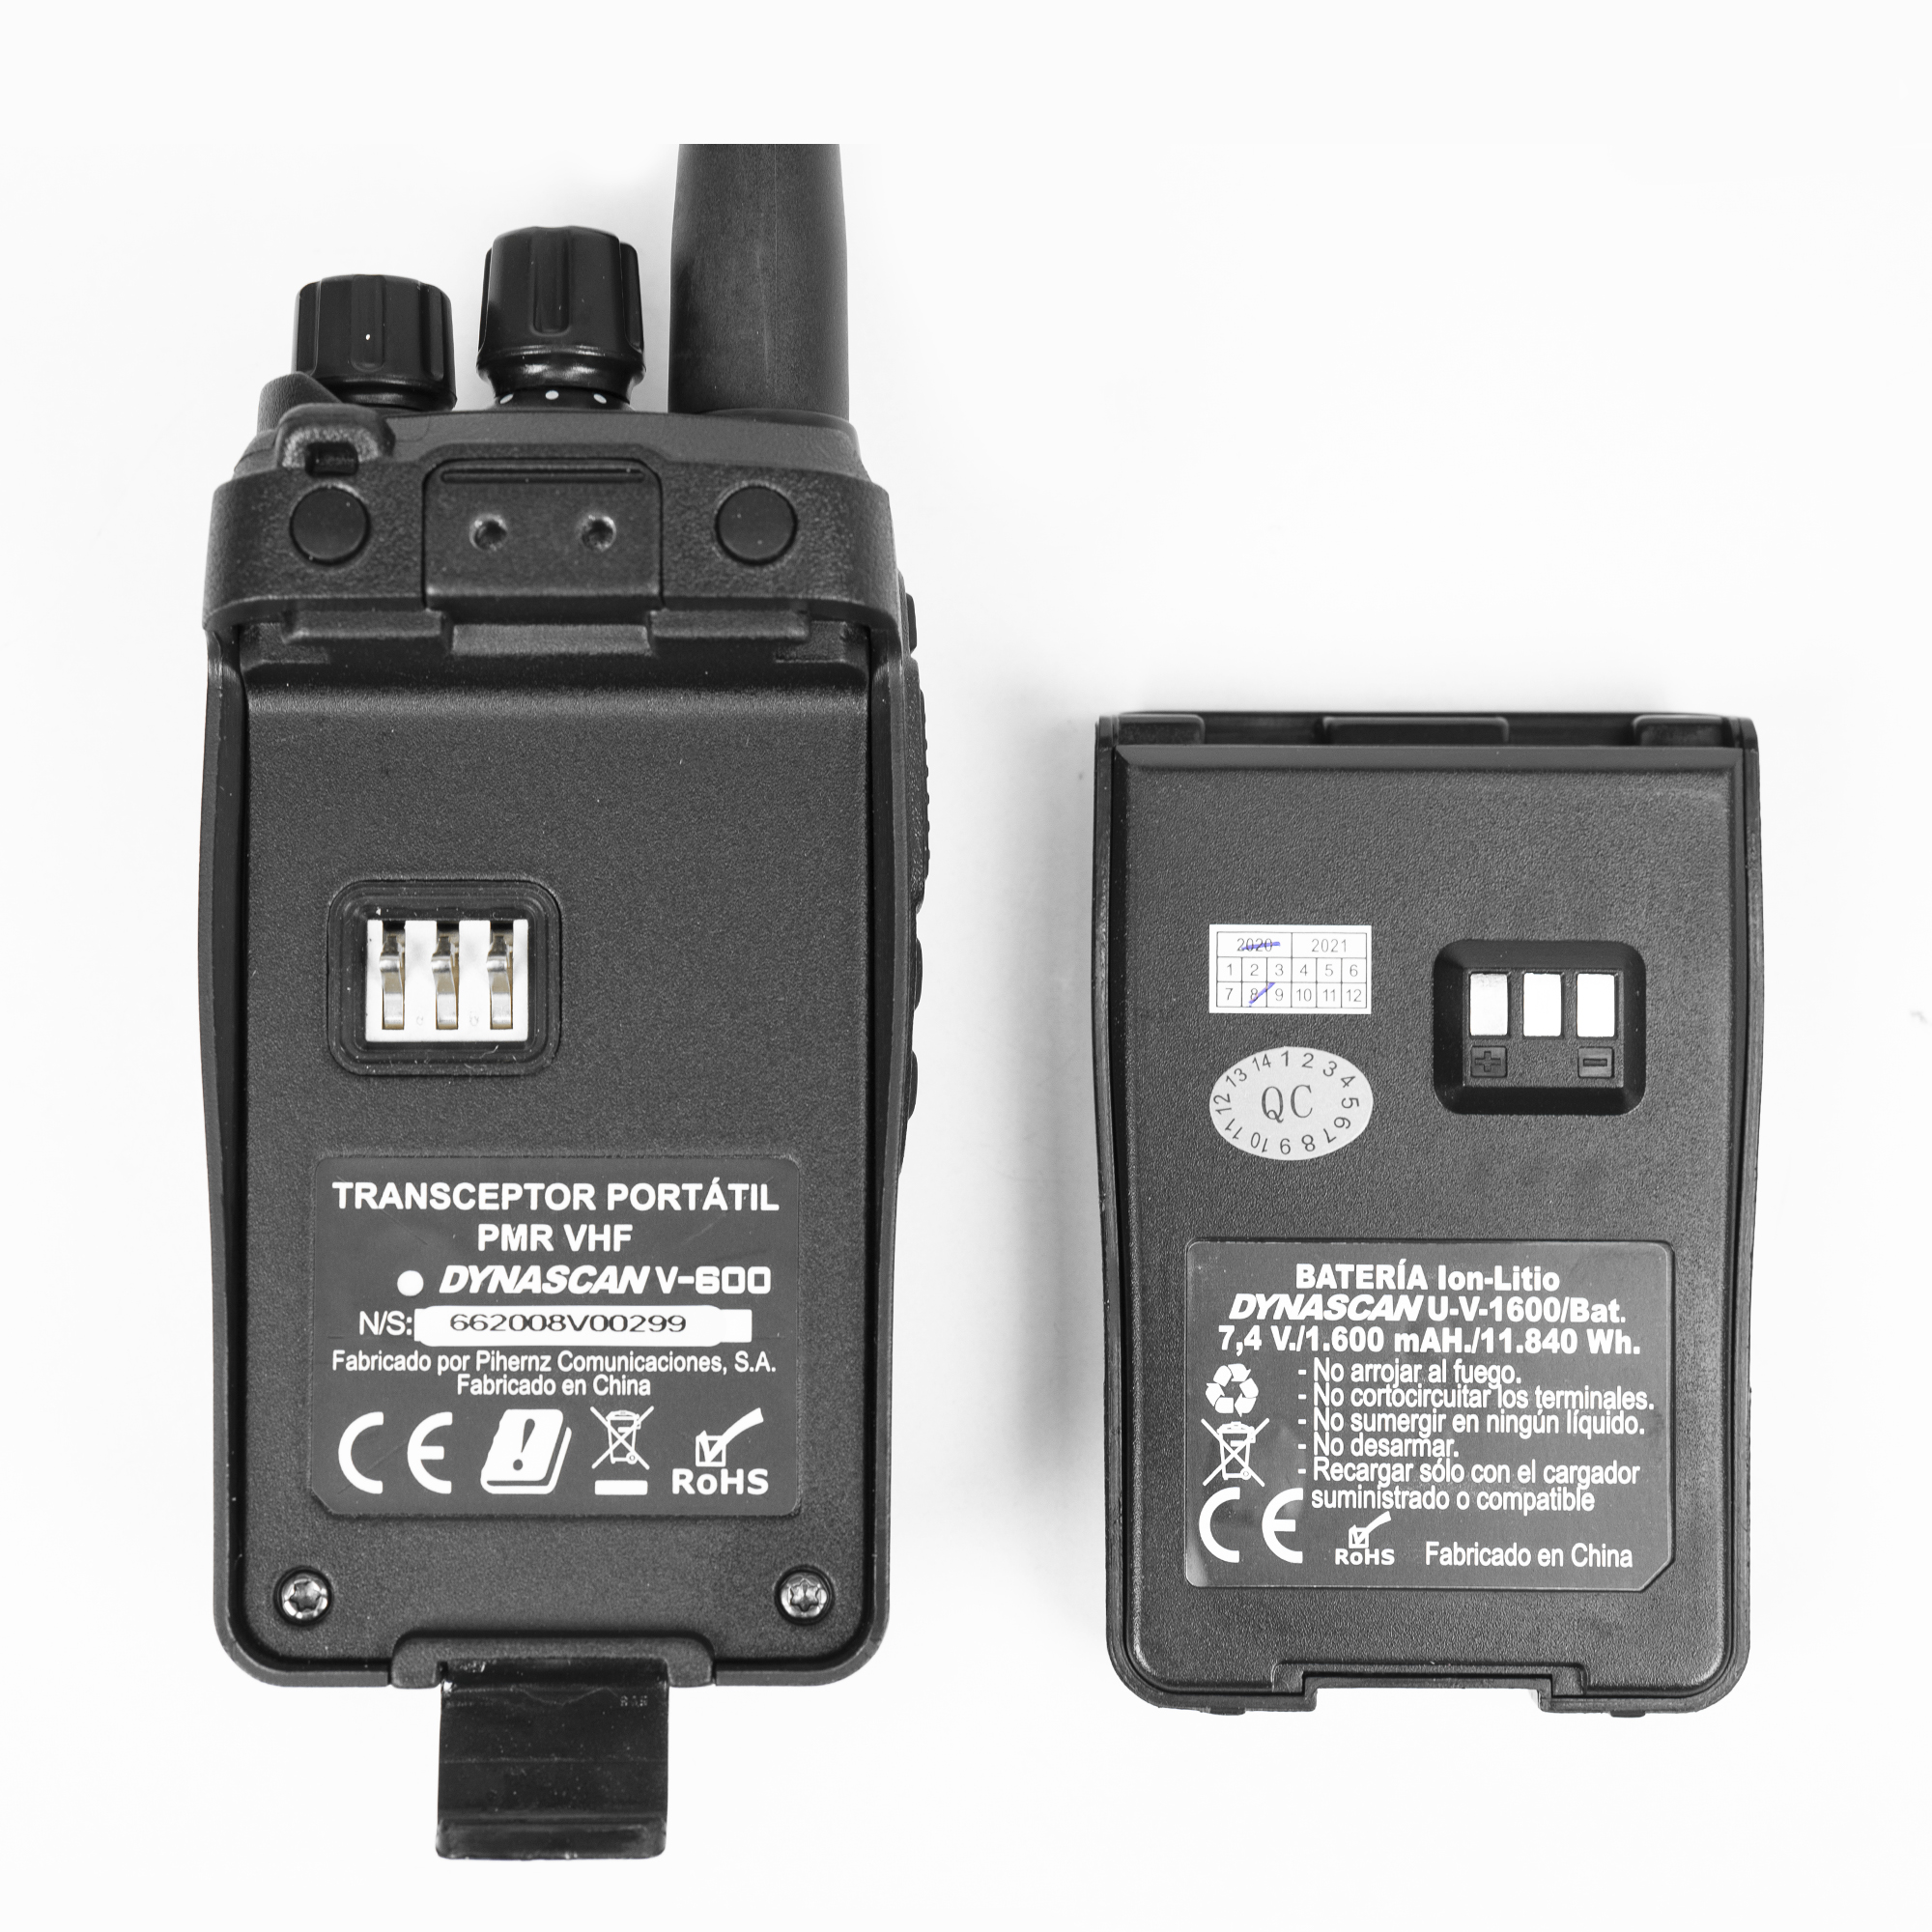 Statie radio portabila VHF PNI Dynascan V-600, 136-174 MHz, IP67, Scan, Scrambler, VOX image7